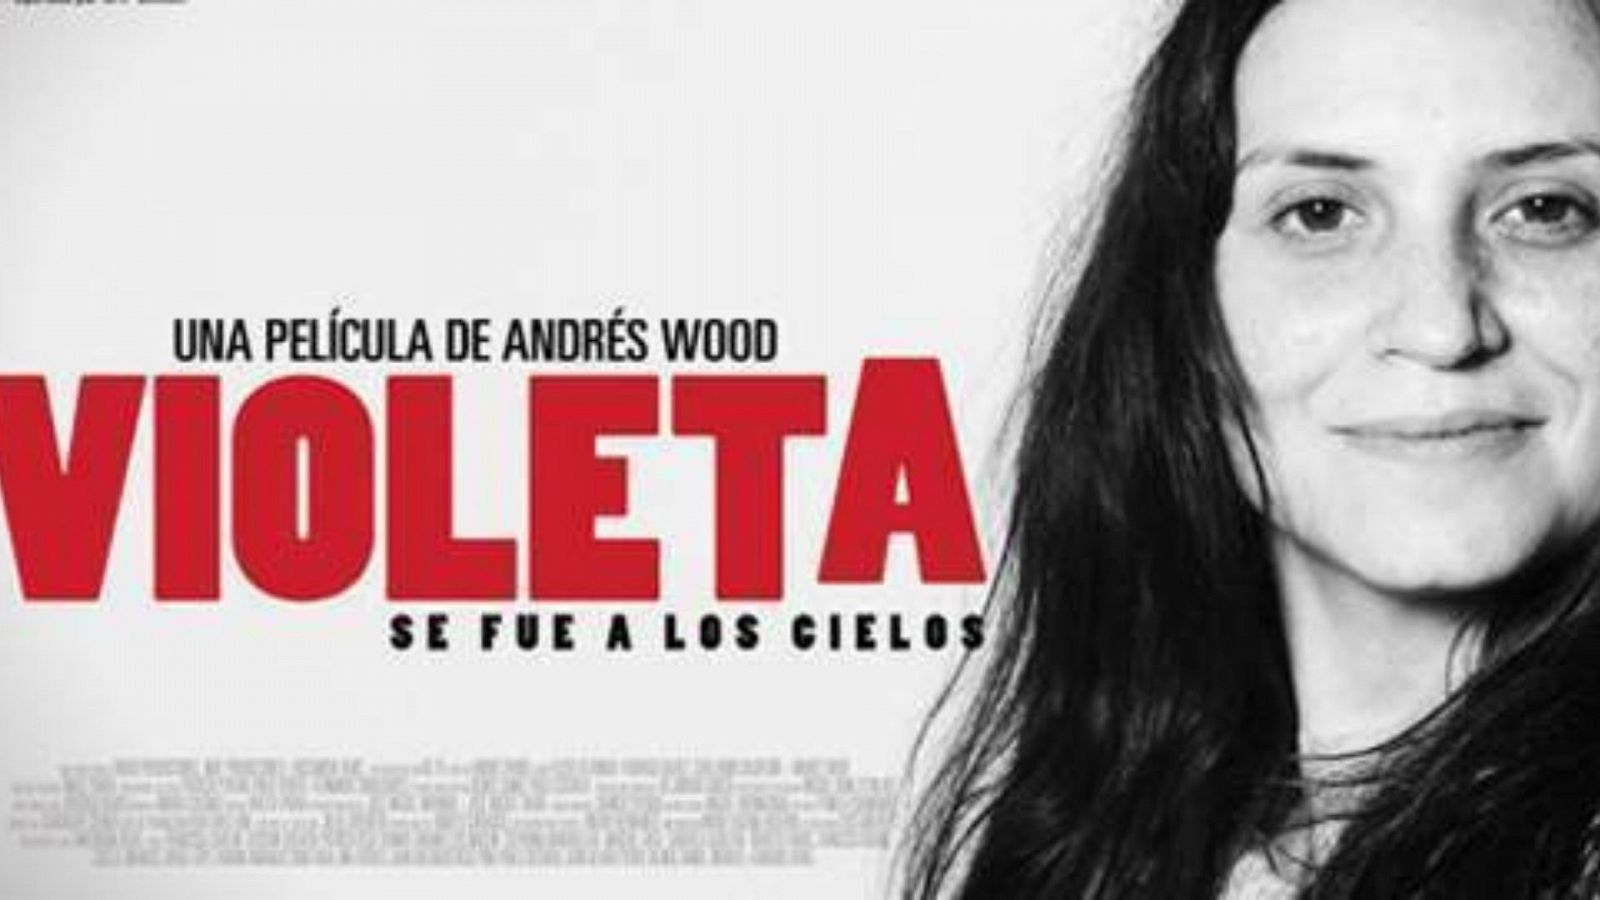  Nunca es Tarde - 'Violeta se fue a los cielos', la película sobre la cantautora chilena Violeta Parra - Ver ahora